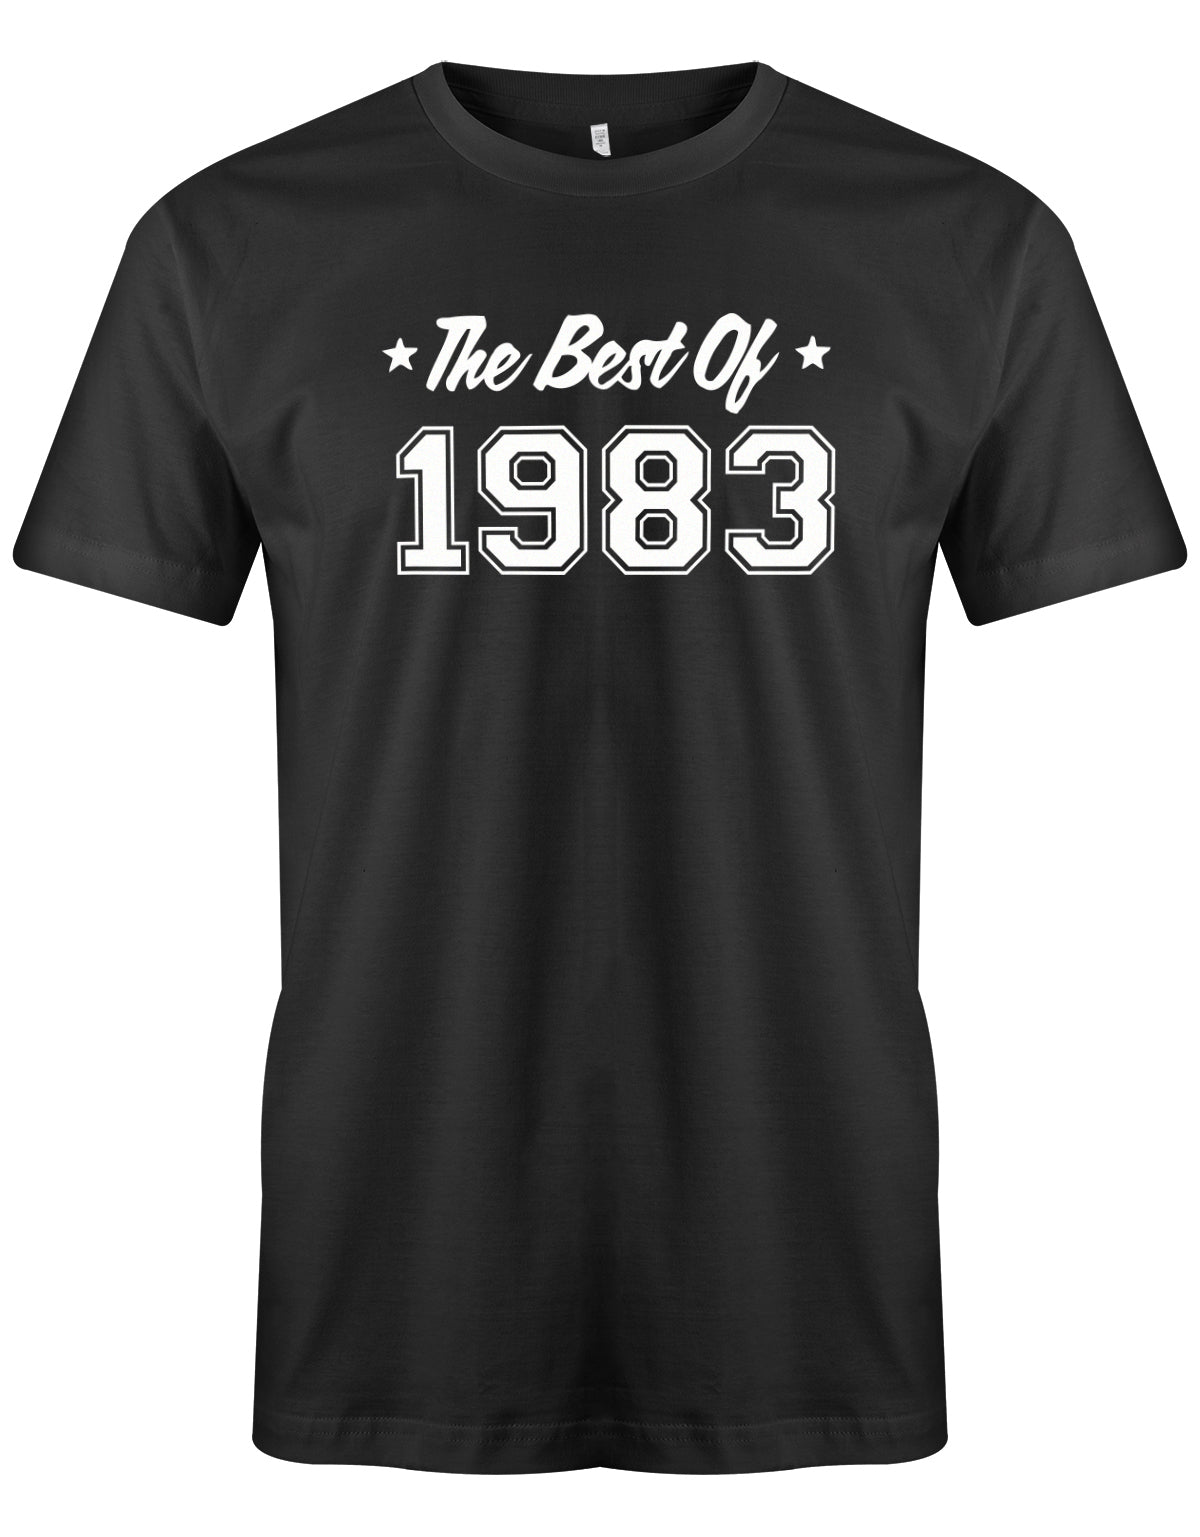 The best of 1983 - T-Shirt 40 Geburtstag Männer - Jahrgang 1983 TShirt  SChwarz